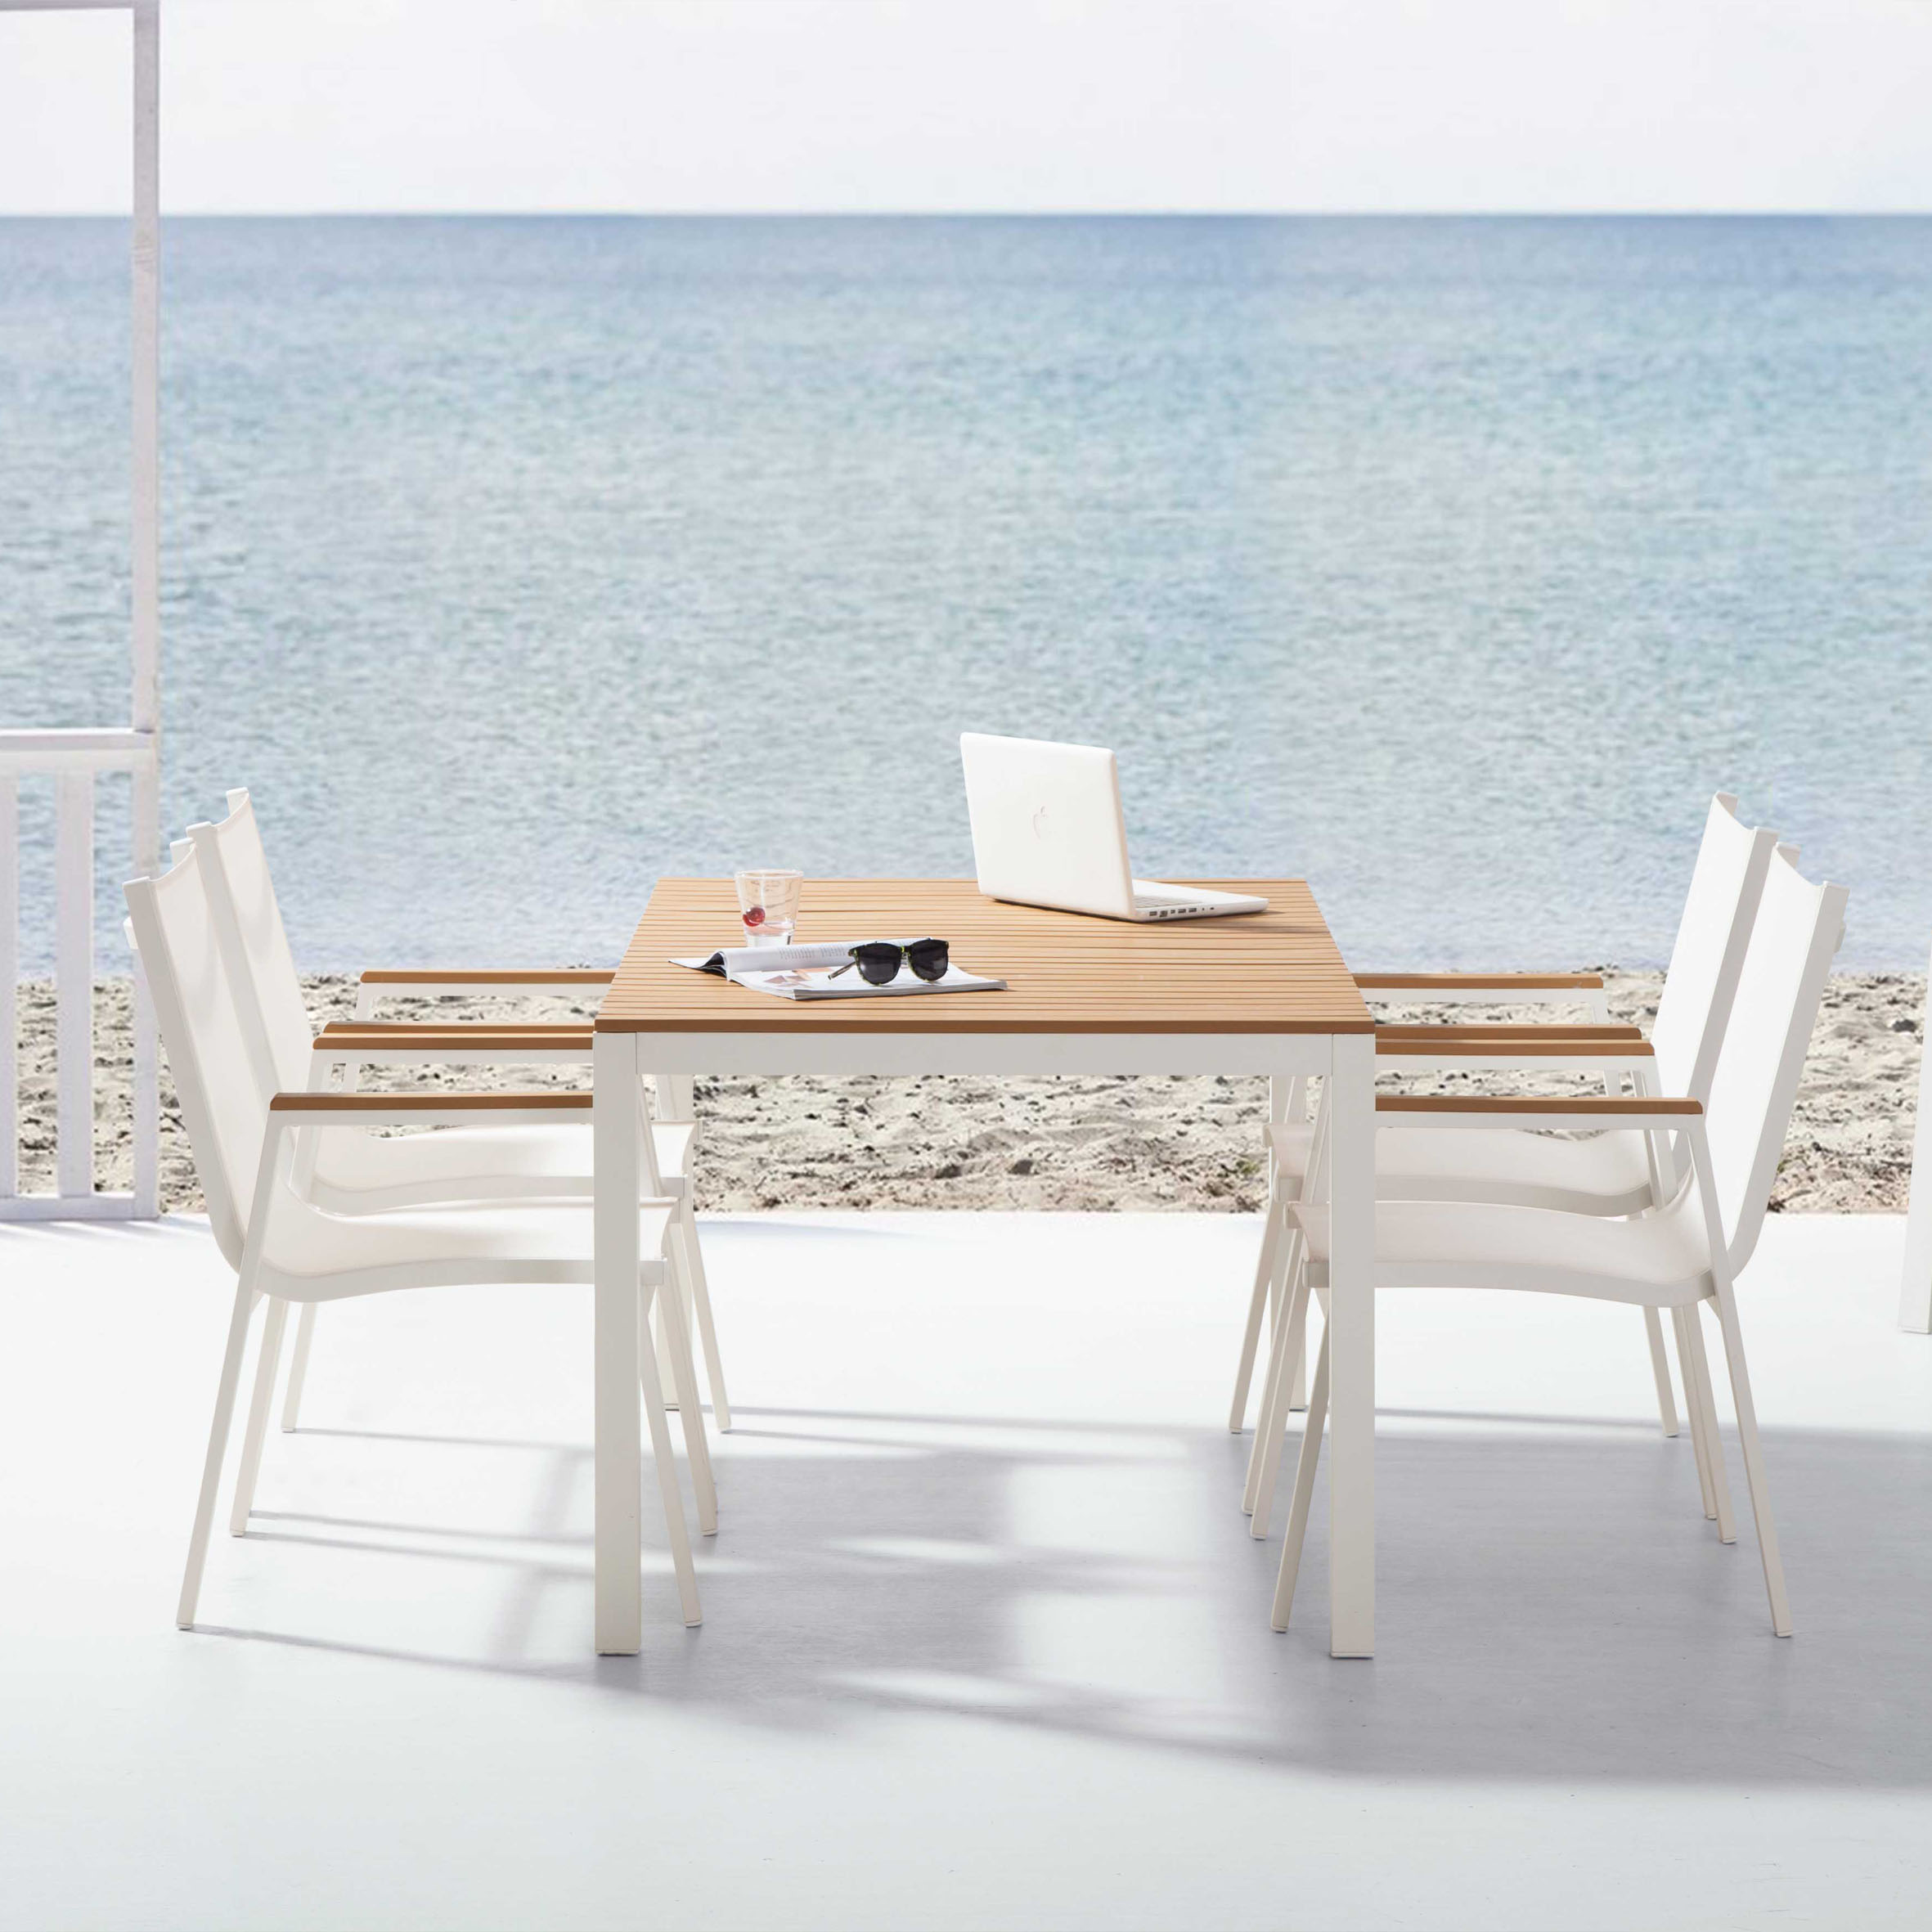 Snježno bijeli stol za blagovanje (Poly wood) S1